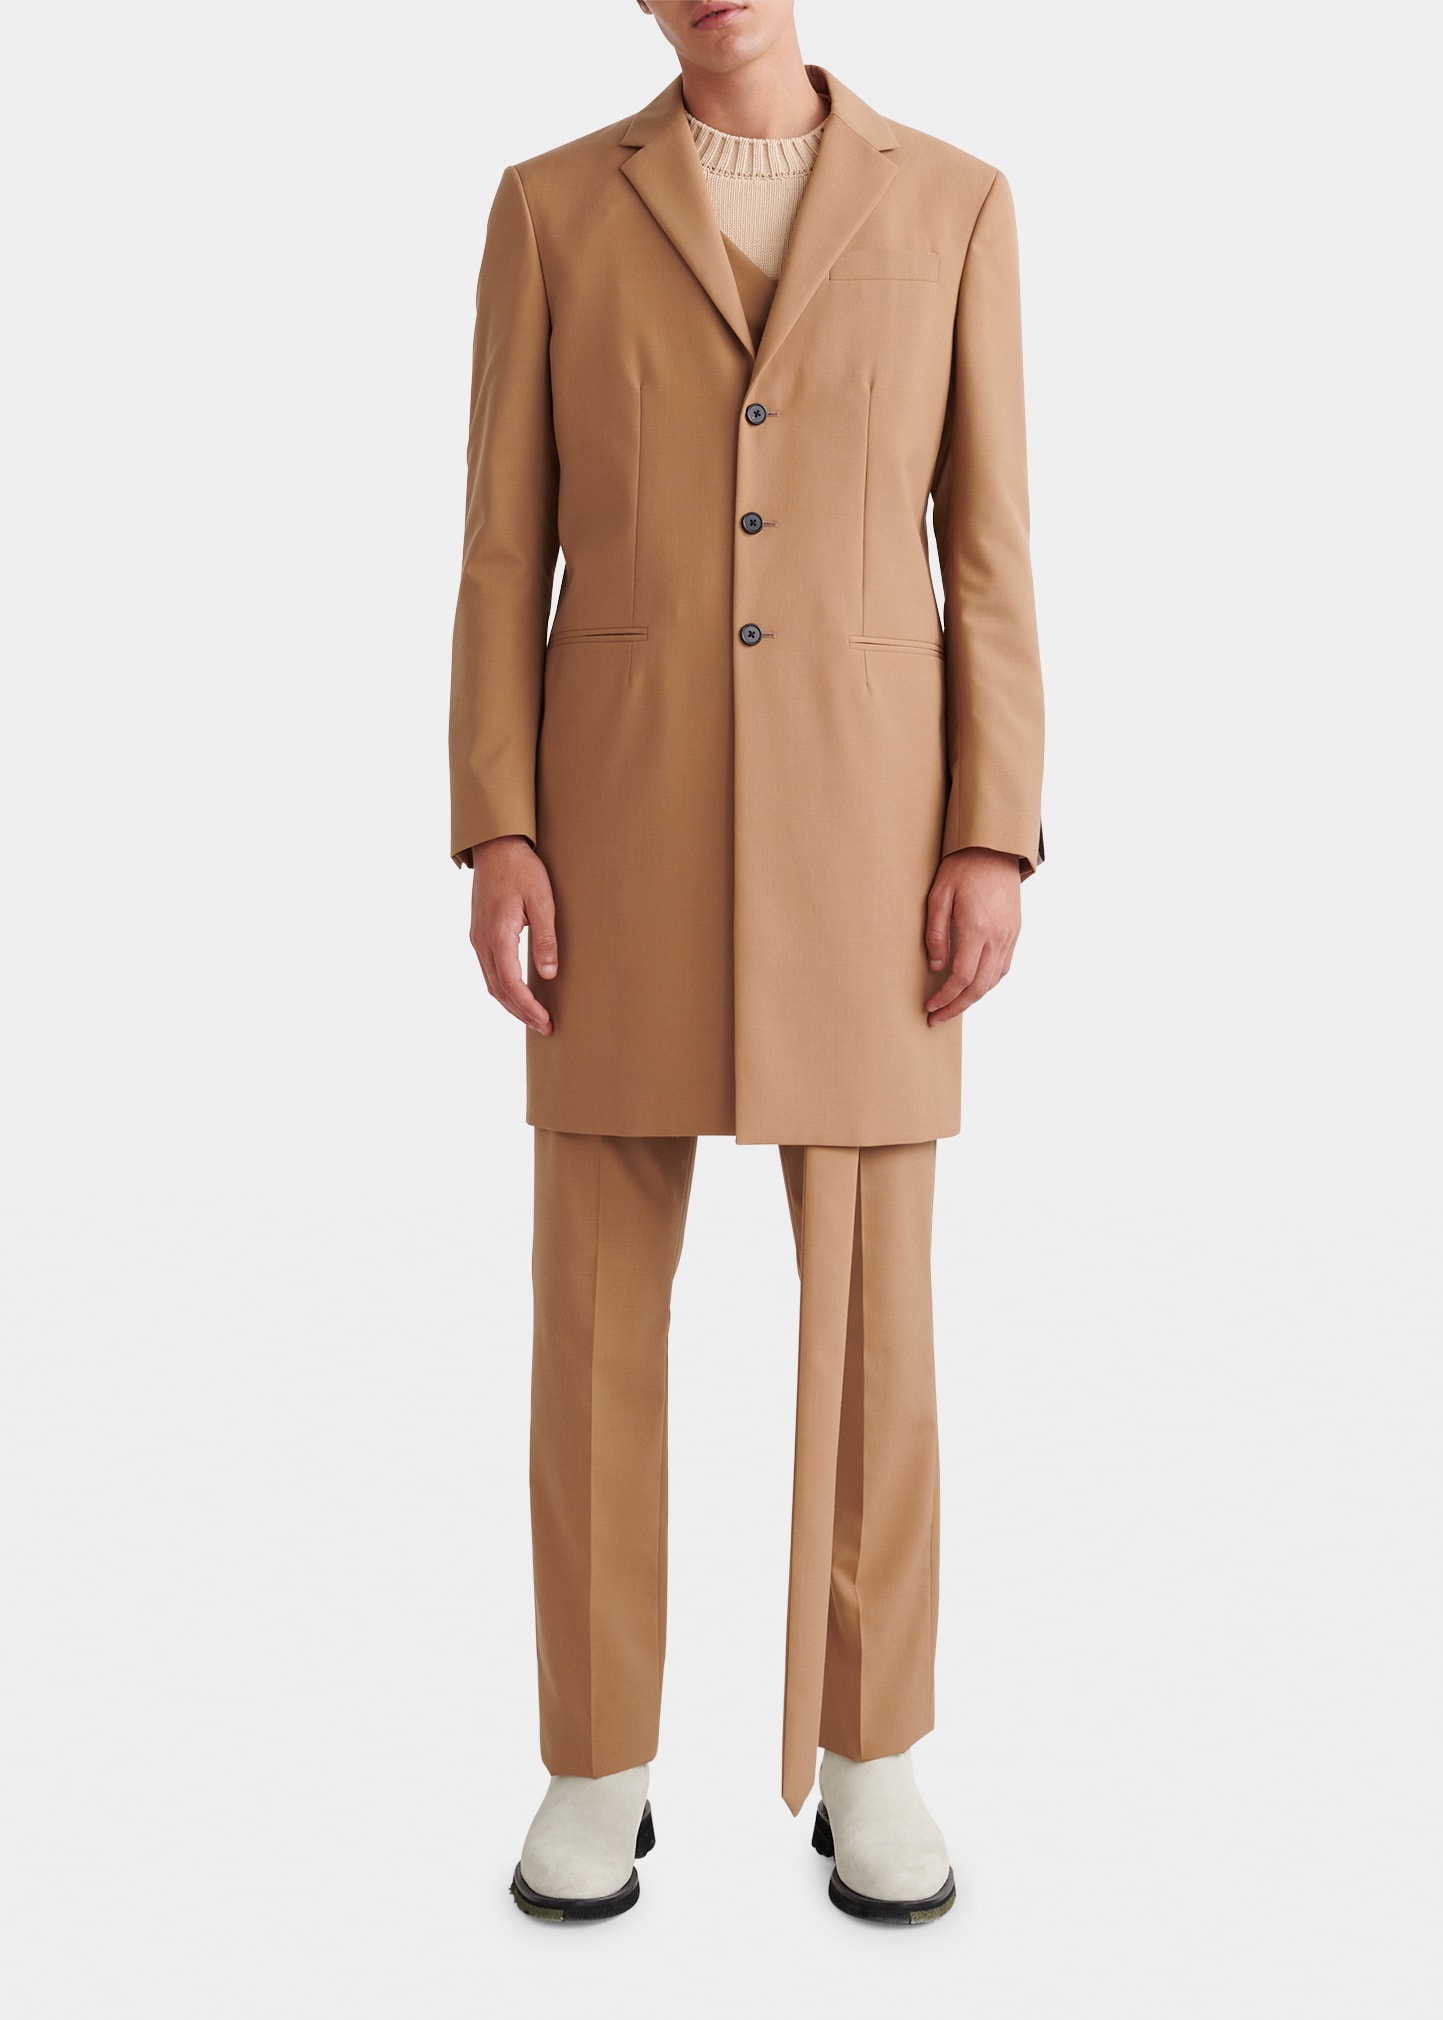 Men's Overcoat with Cross Strap